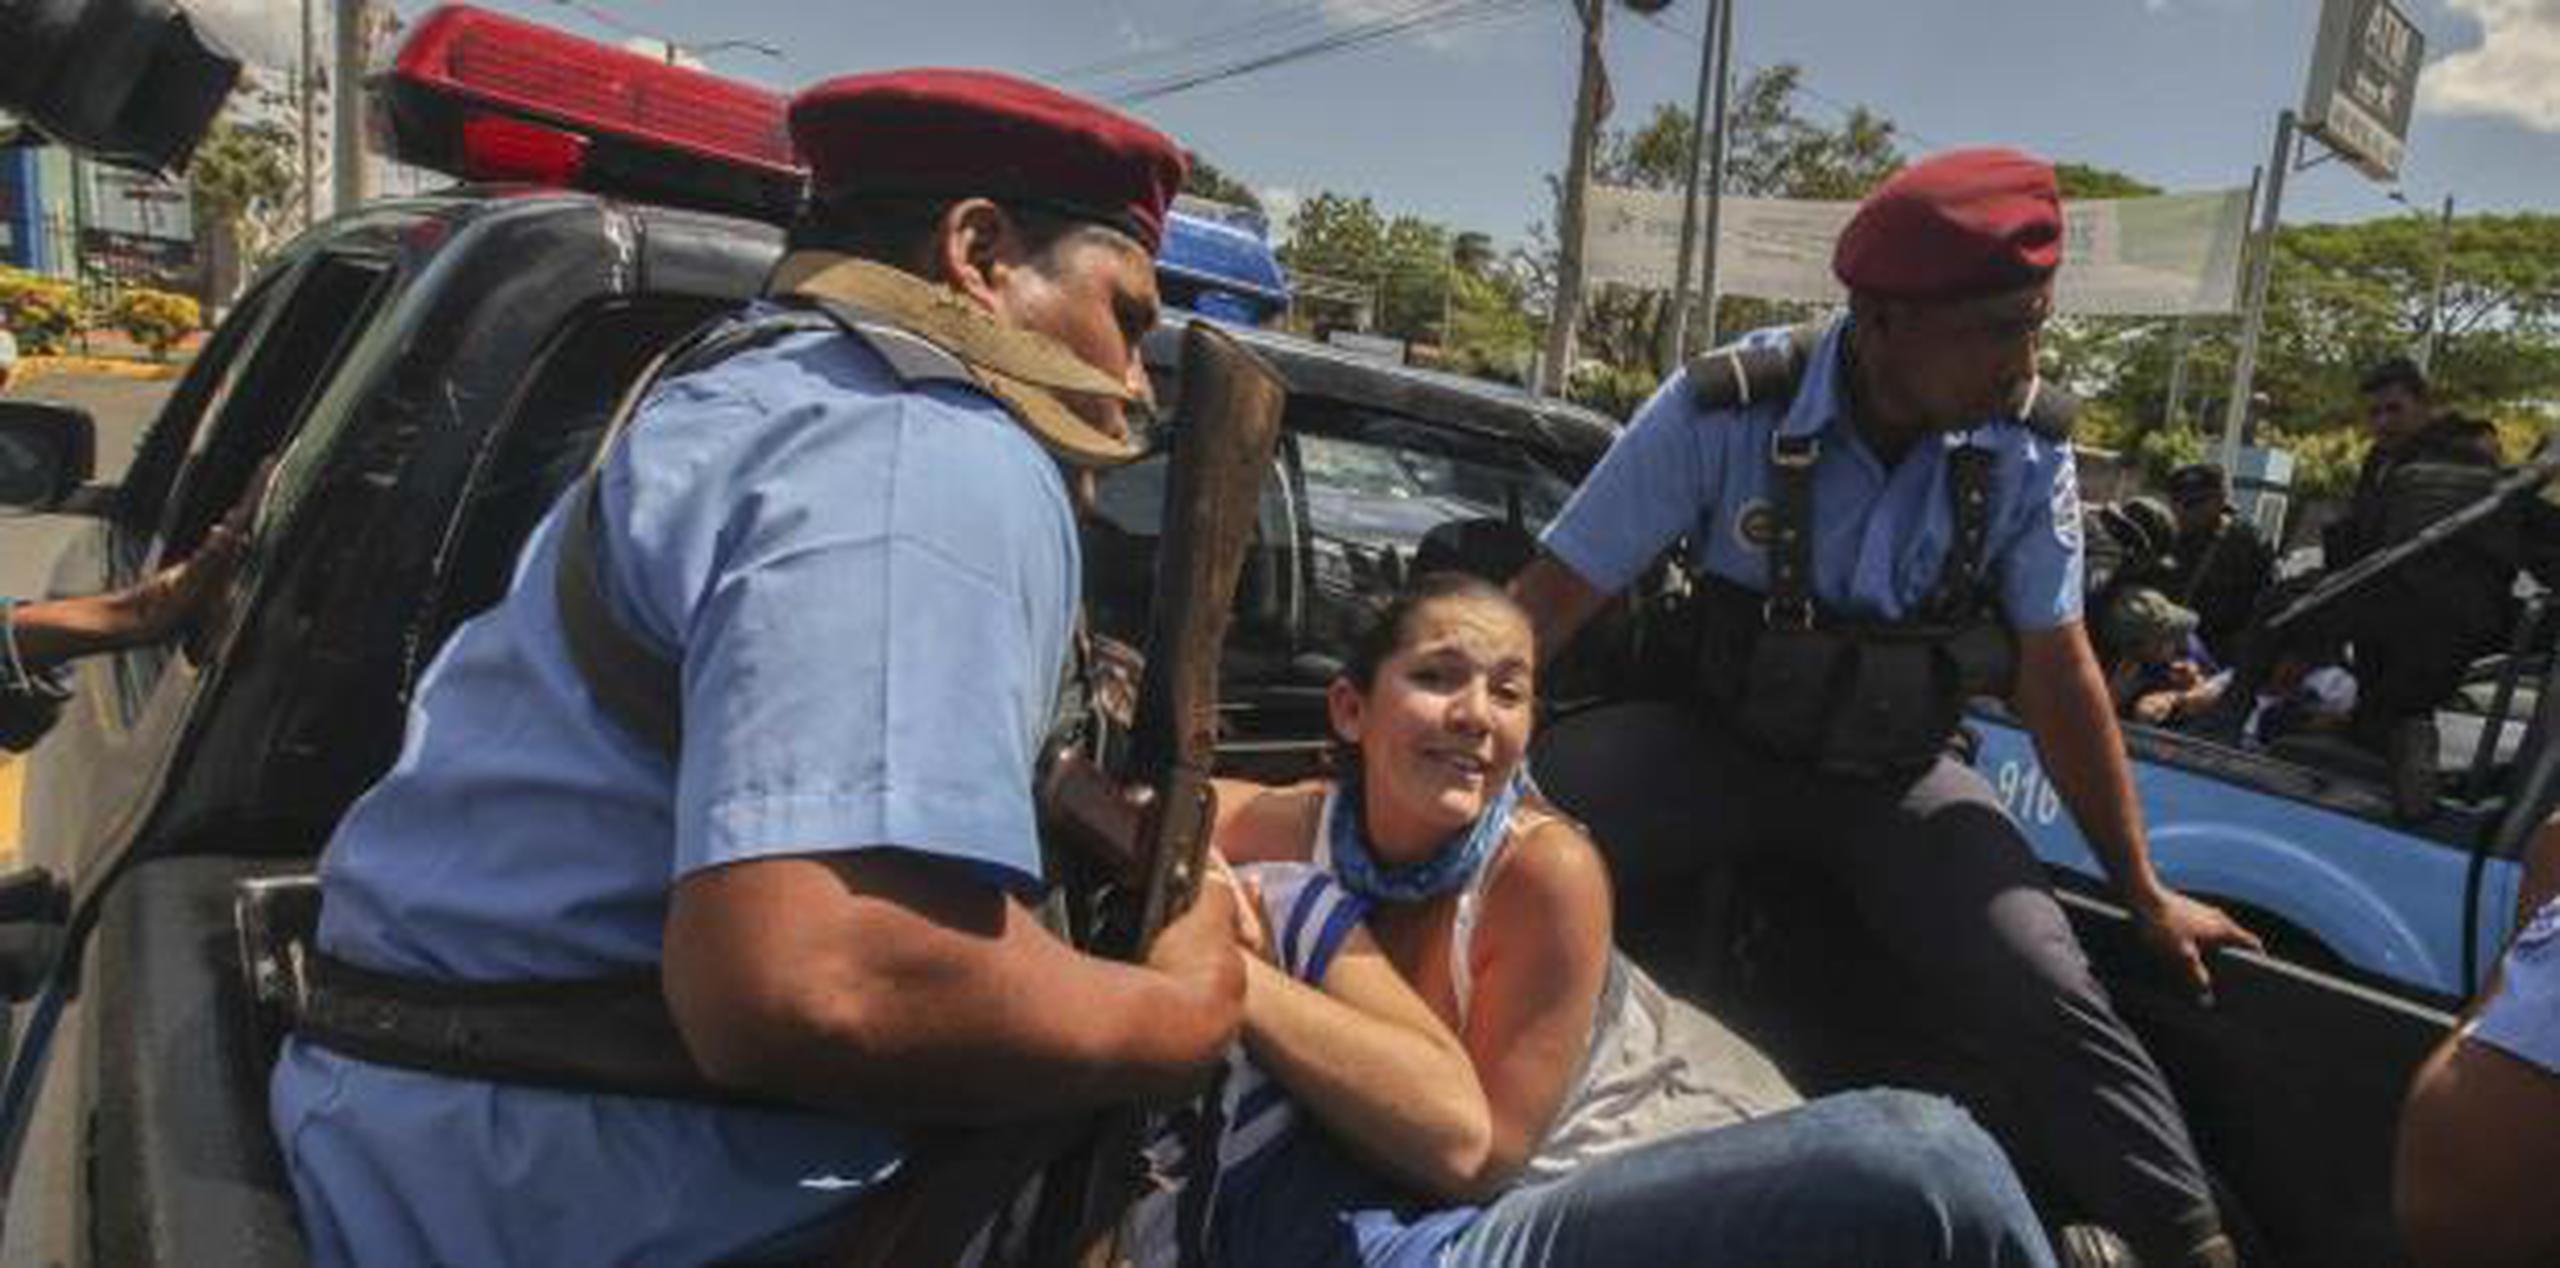 El gobierno prohibió en septiembre las protestas opositoras y la policía impidió la movilización del sábado en Managua, donde golpeó a varios inconformes mientras los metía por la fuerza a los coches patrulla. (AP)